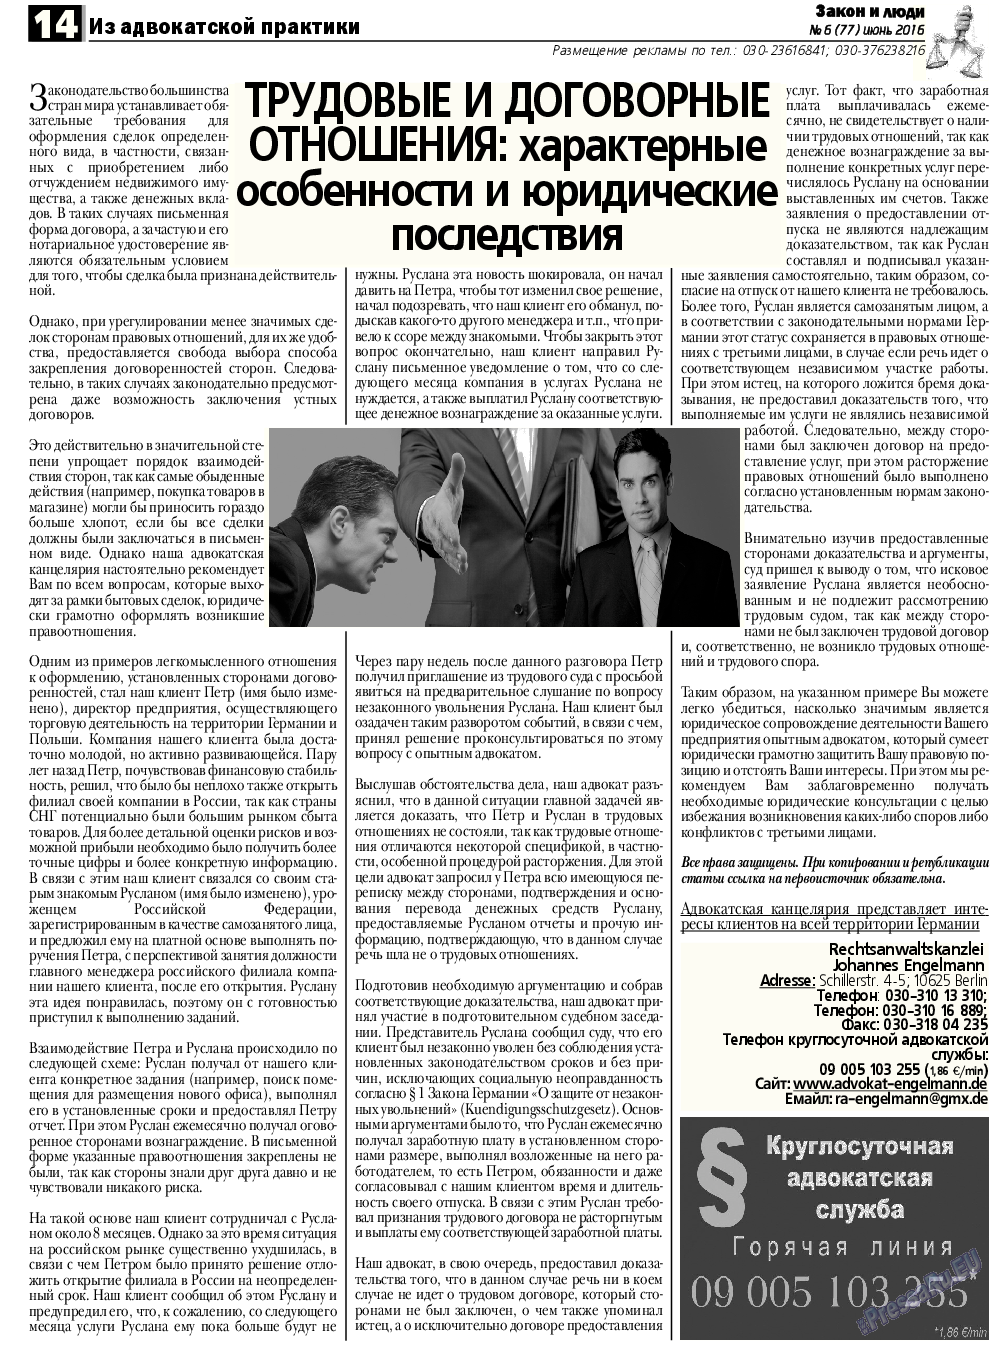 Закон и люди, газета. 2016 №6 стр.14